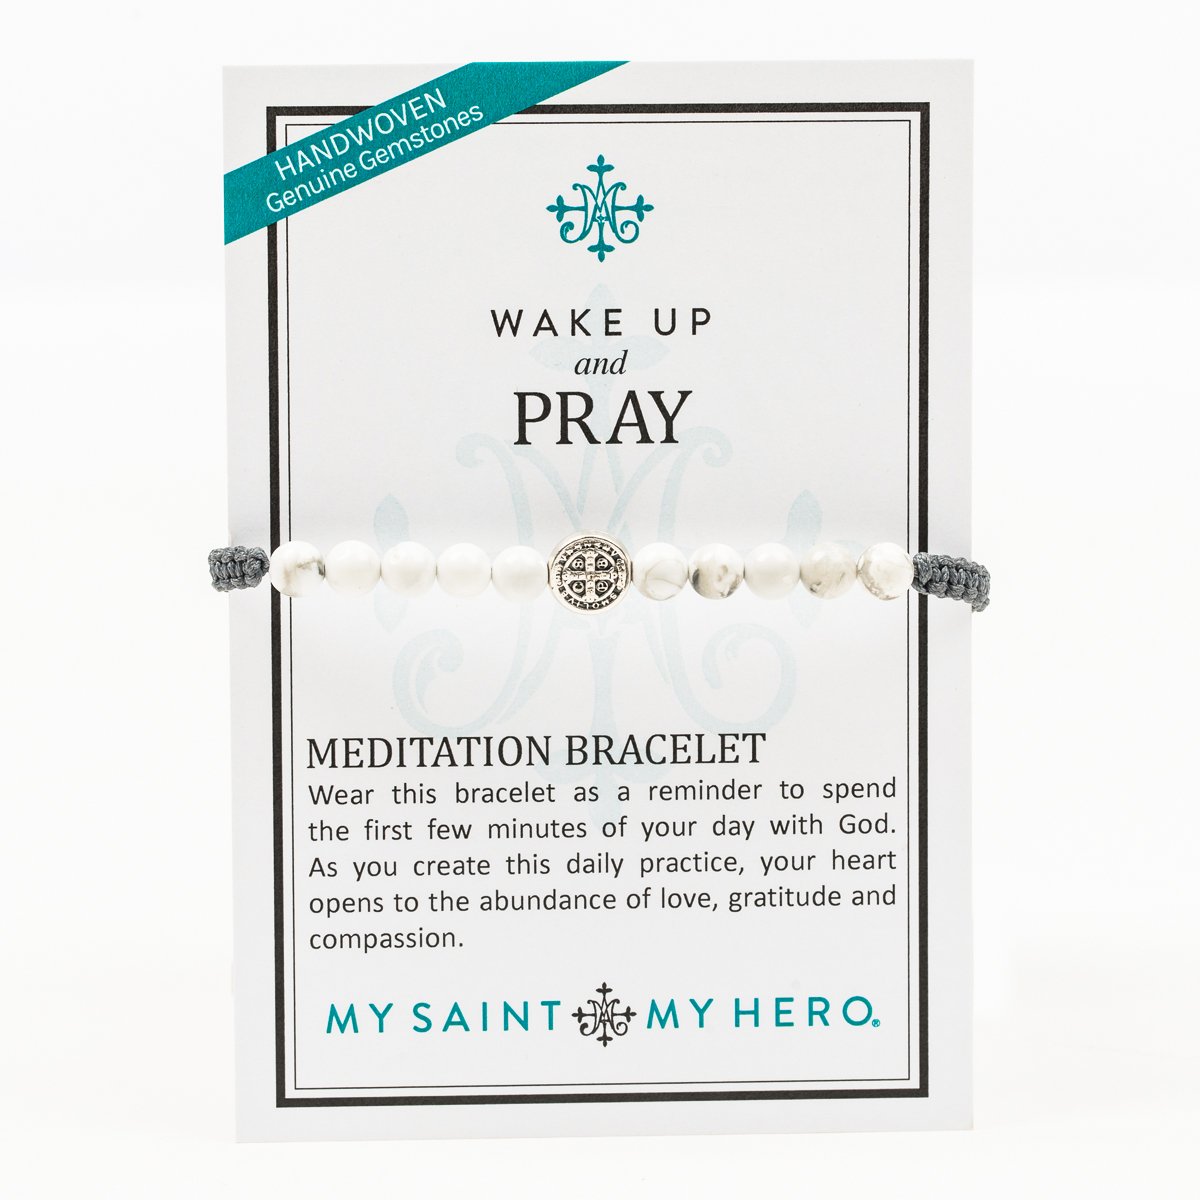 Wake Up and Pray Meditation Bracelet - White Howlite